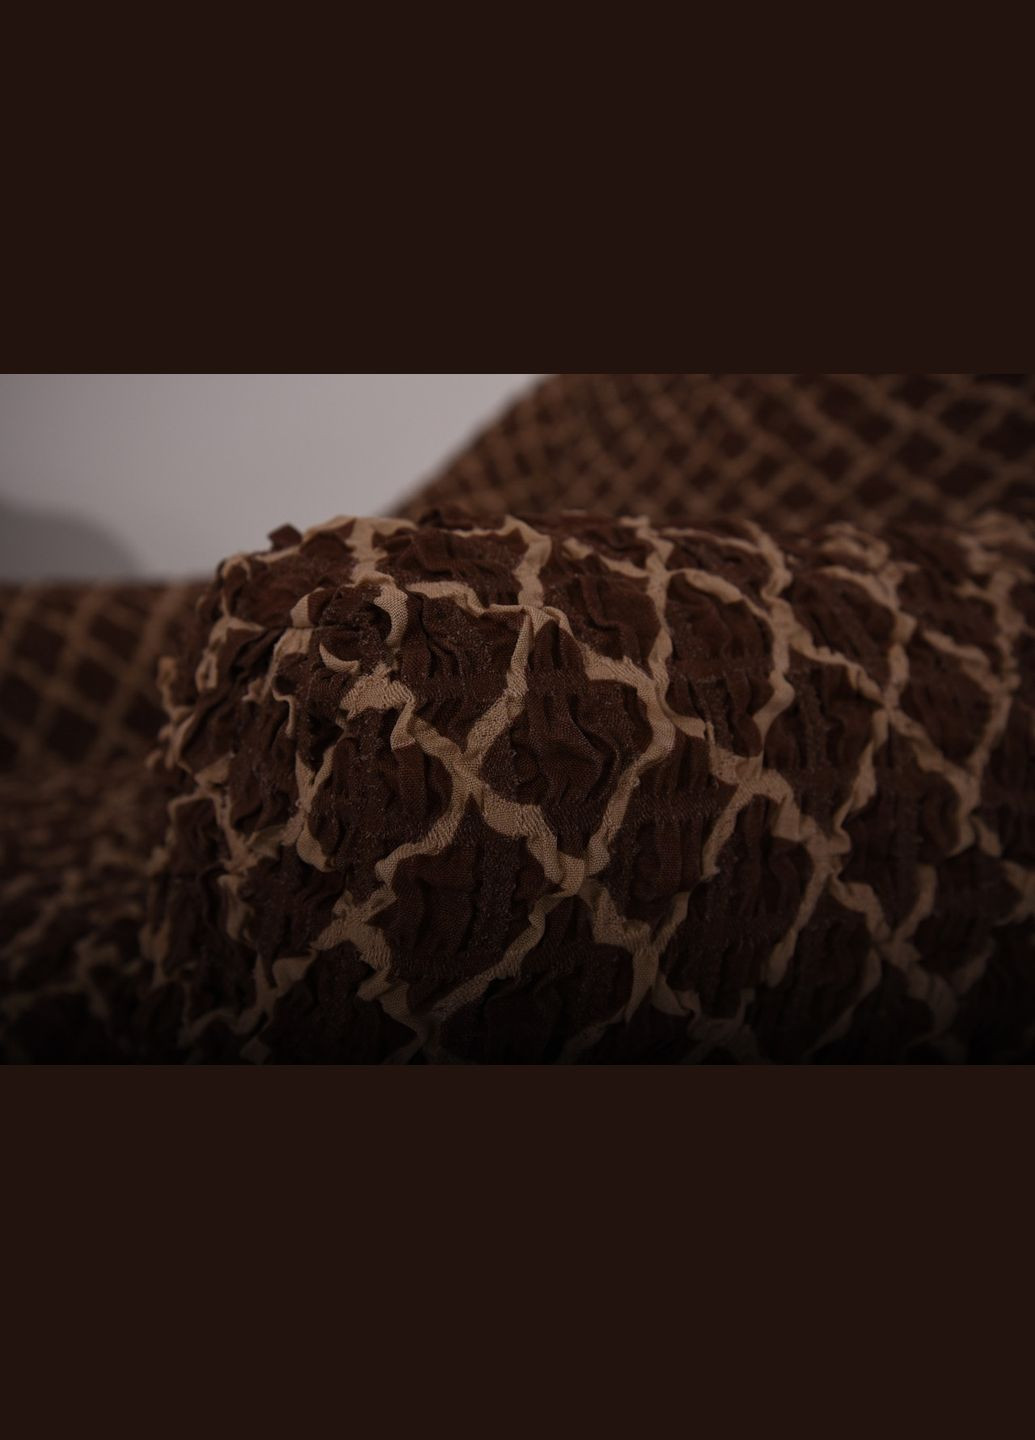 Цветной чехол натяжной на трехместный диван без рюш 34-201 Темно-коричневый Venera (268547805)